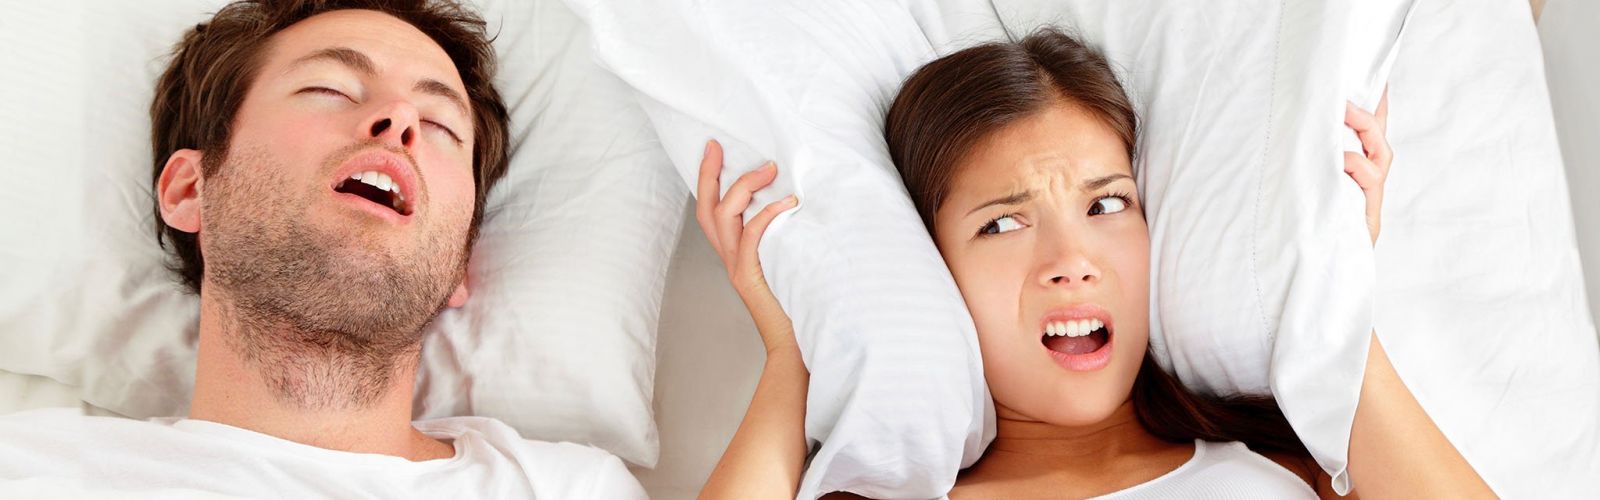 chữa tật ngủ ngáy hiệu quả